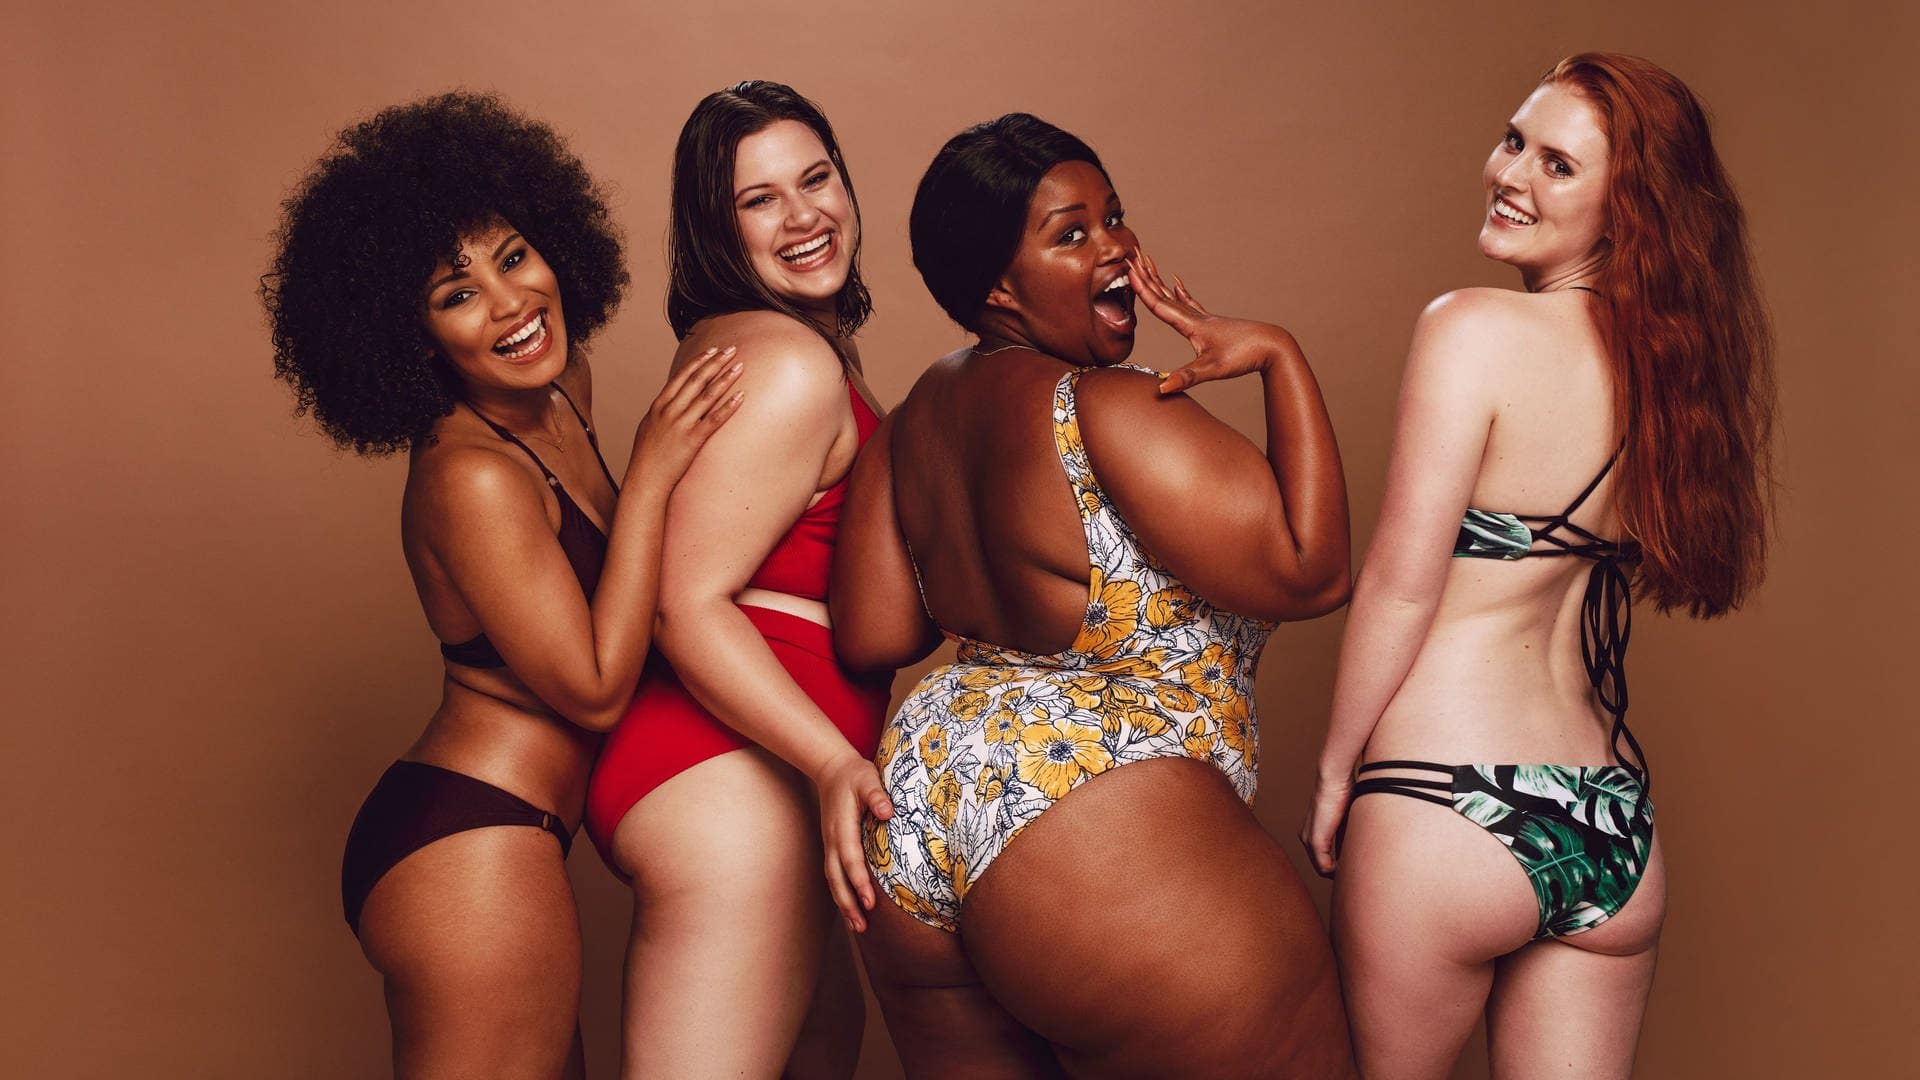 Vier Frauen mit unterschiedlichen Figuren und Hautfarben – lachend und selbstbewusst im Bikini, sie stehen für bodypositivity und brauchen keinen BMI-Rechner.